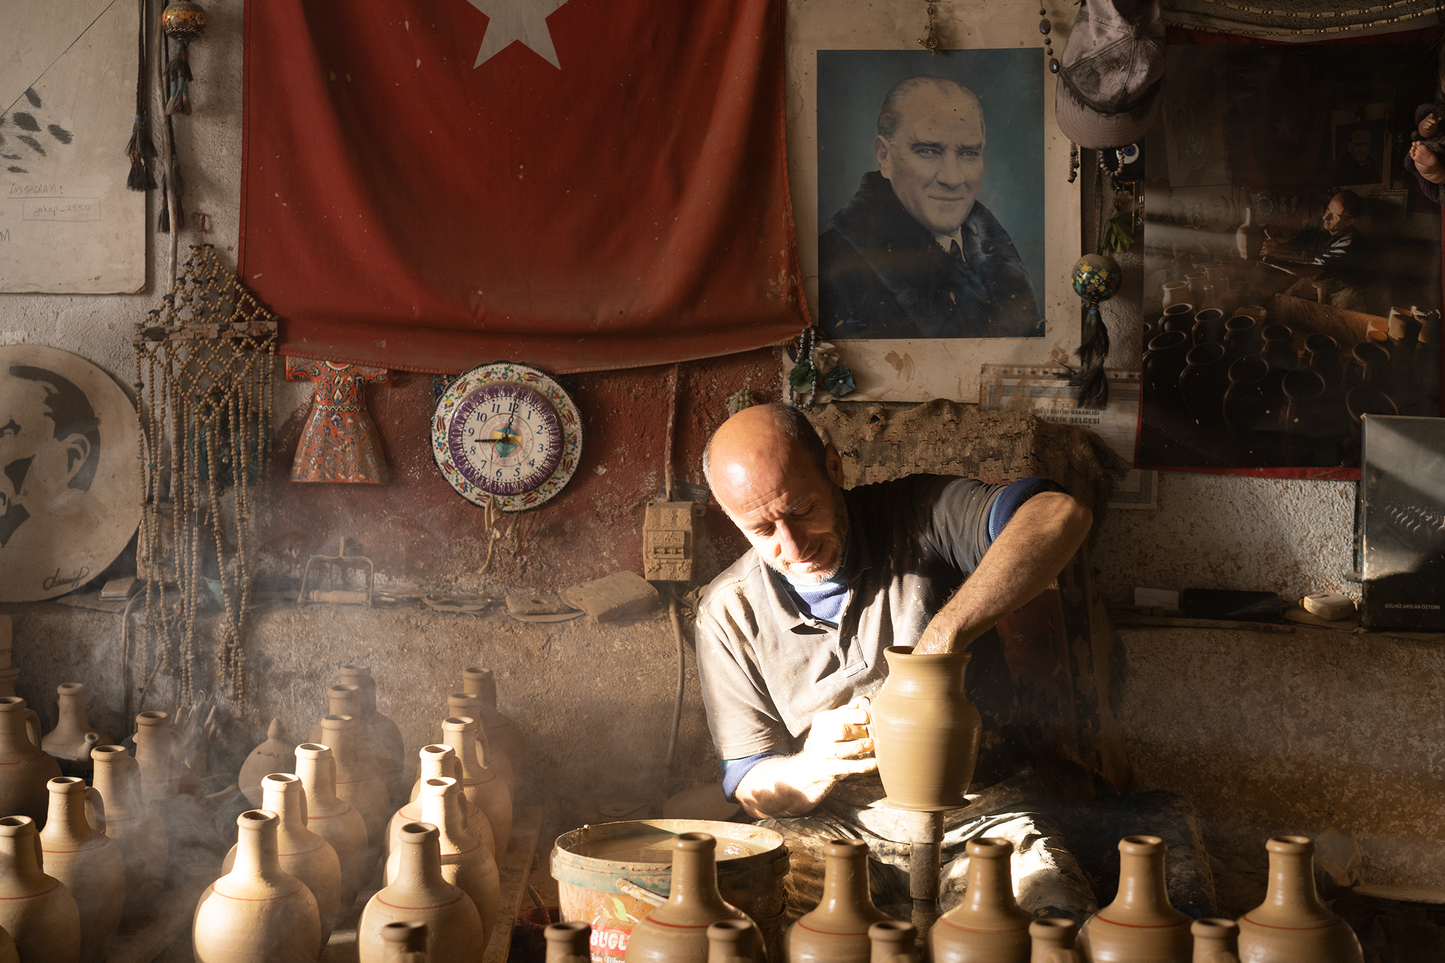 Ataturk and the Ceramist